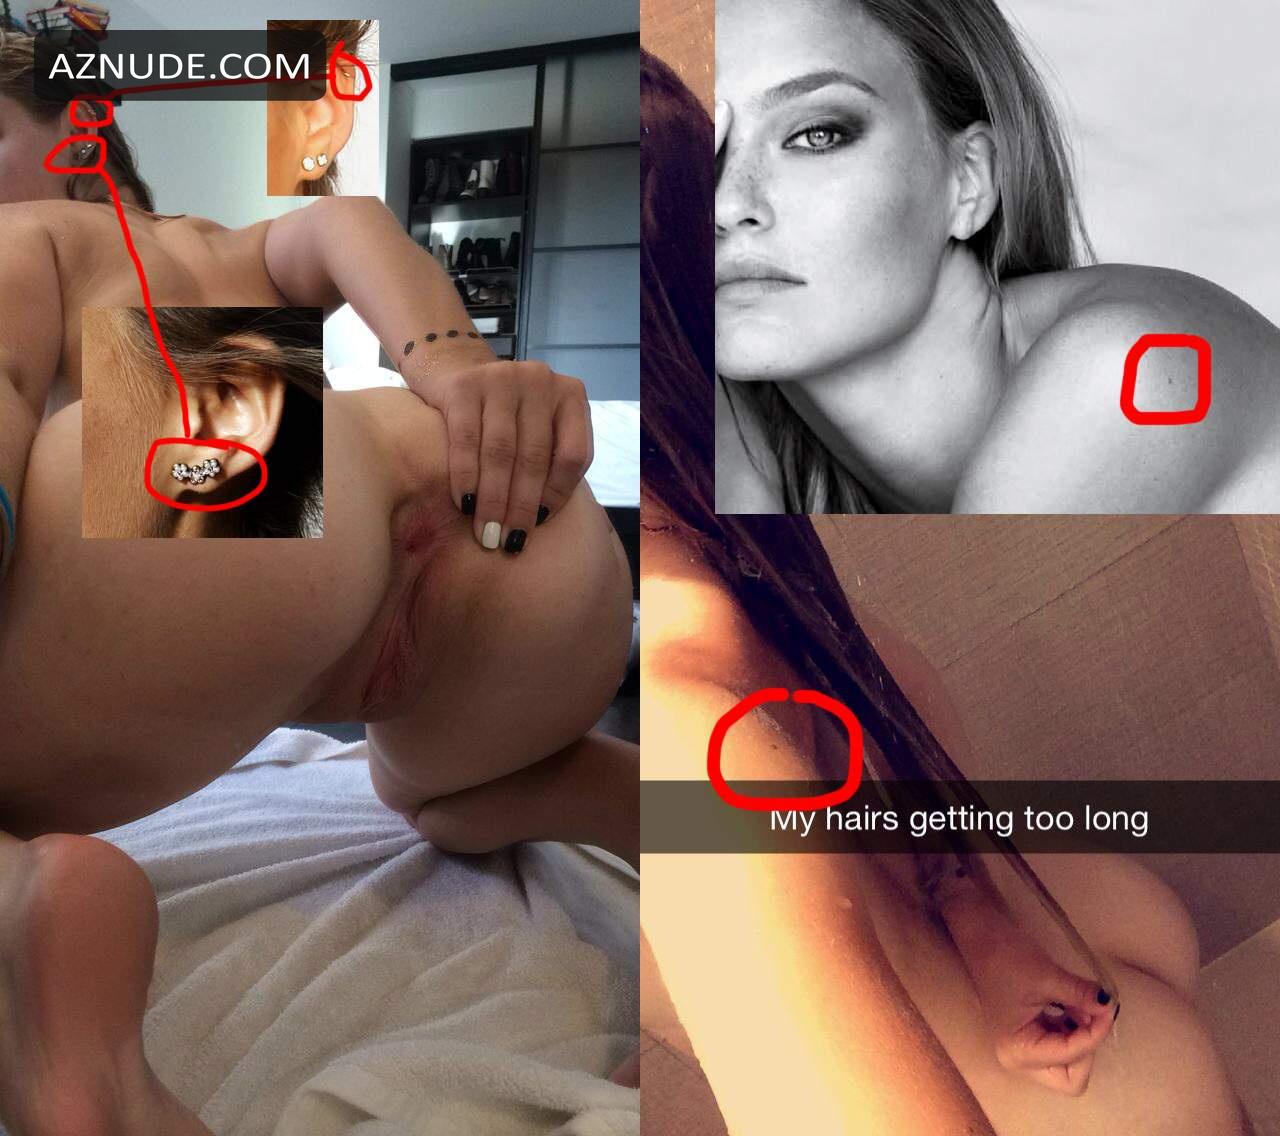 cheryl collier share bar refaeli leaked nude photos